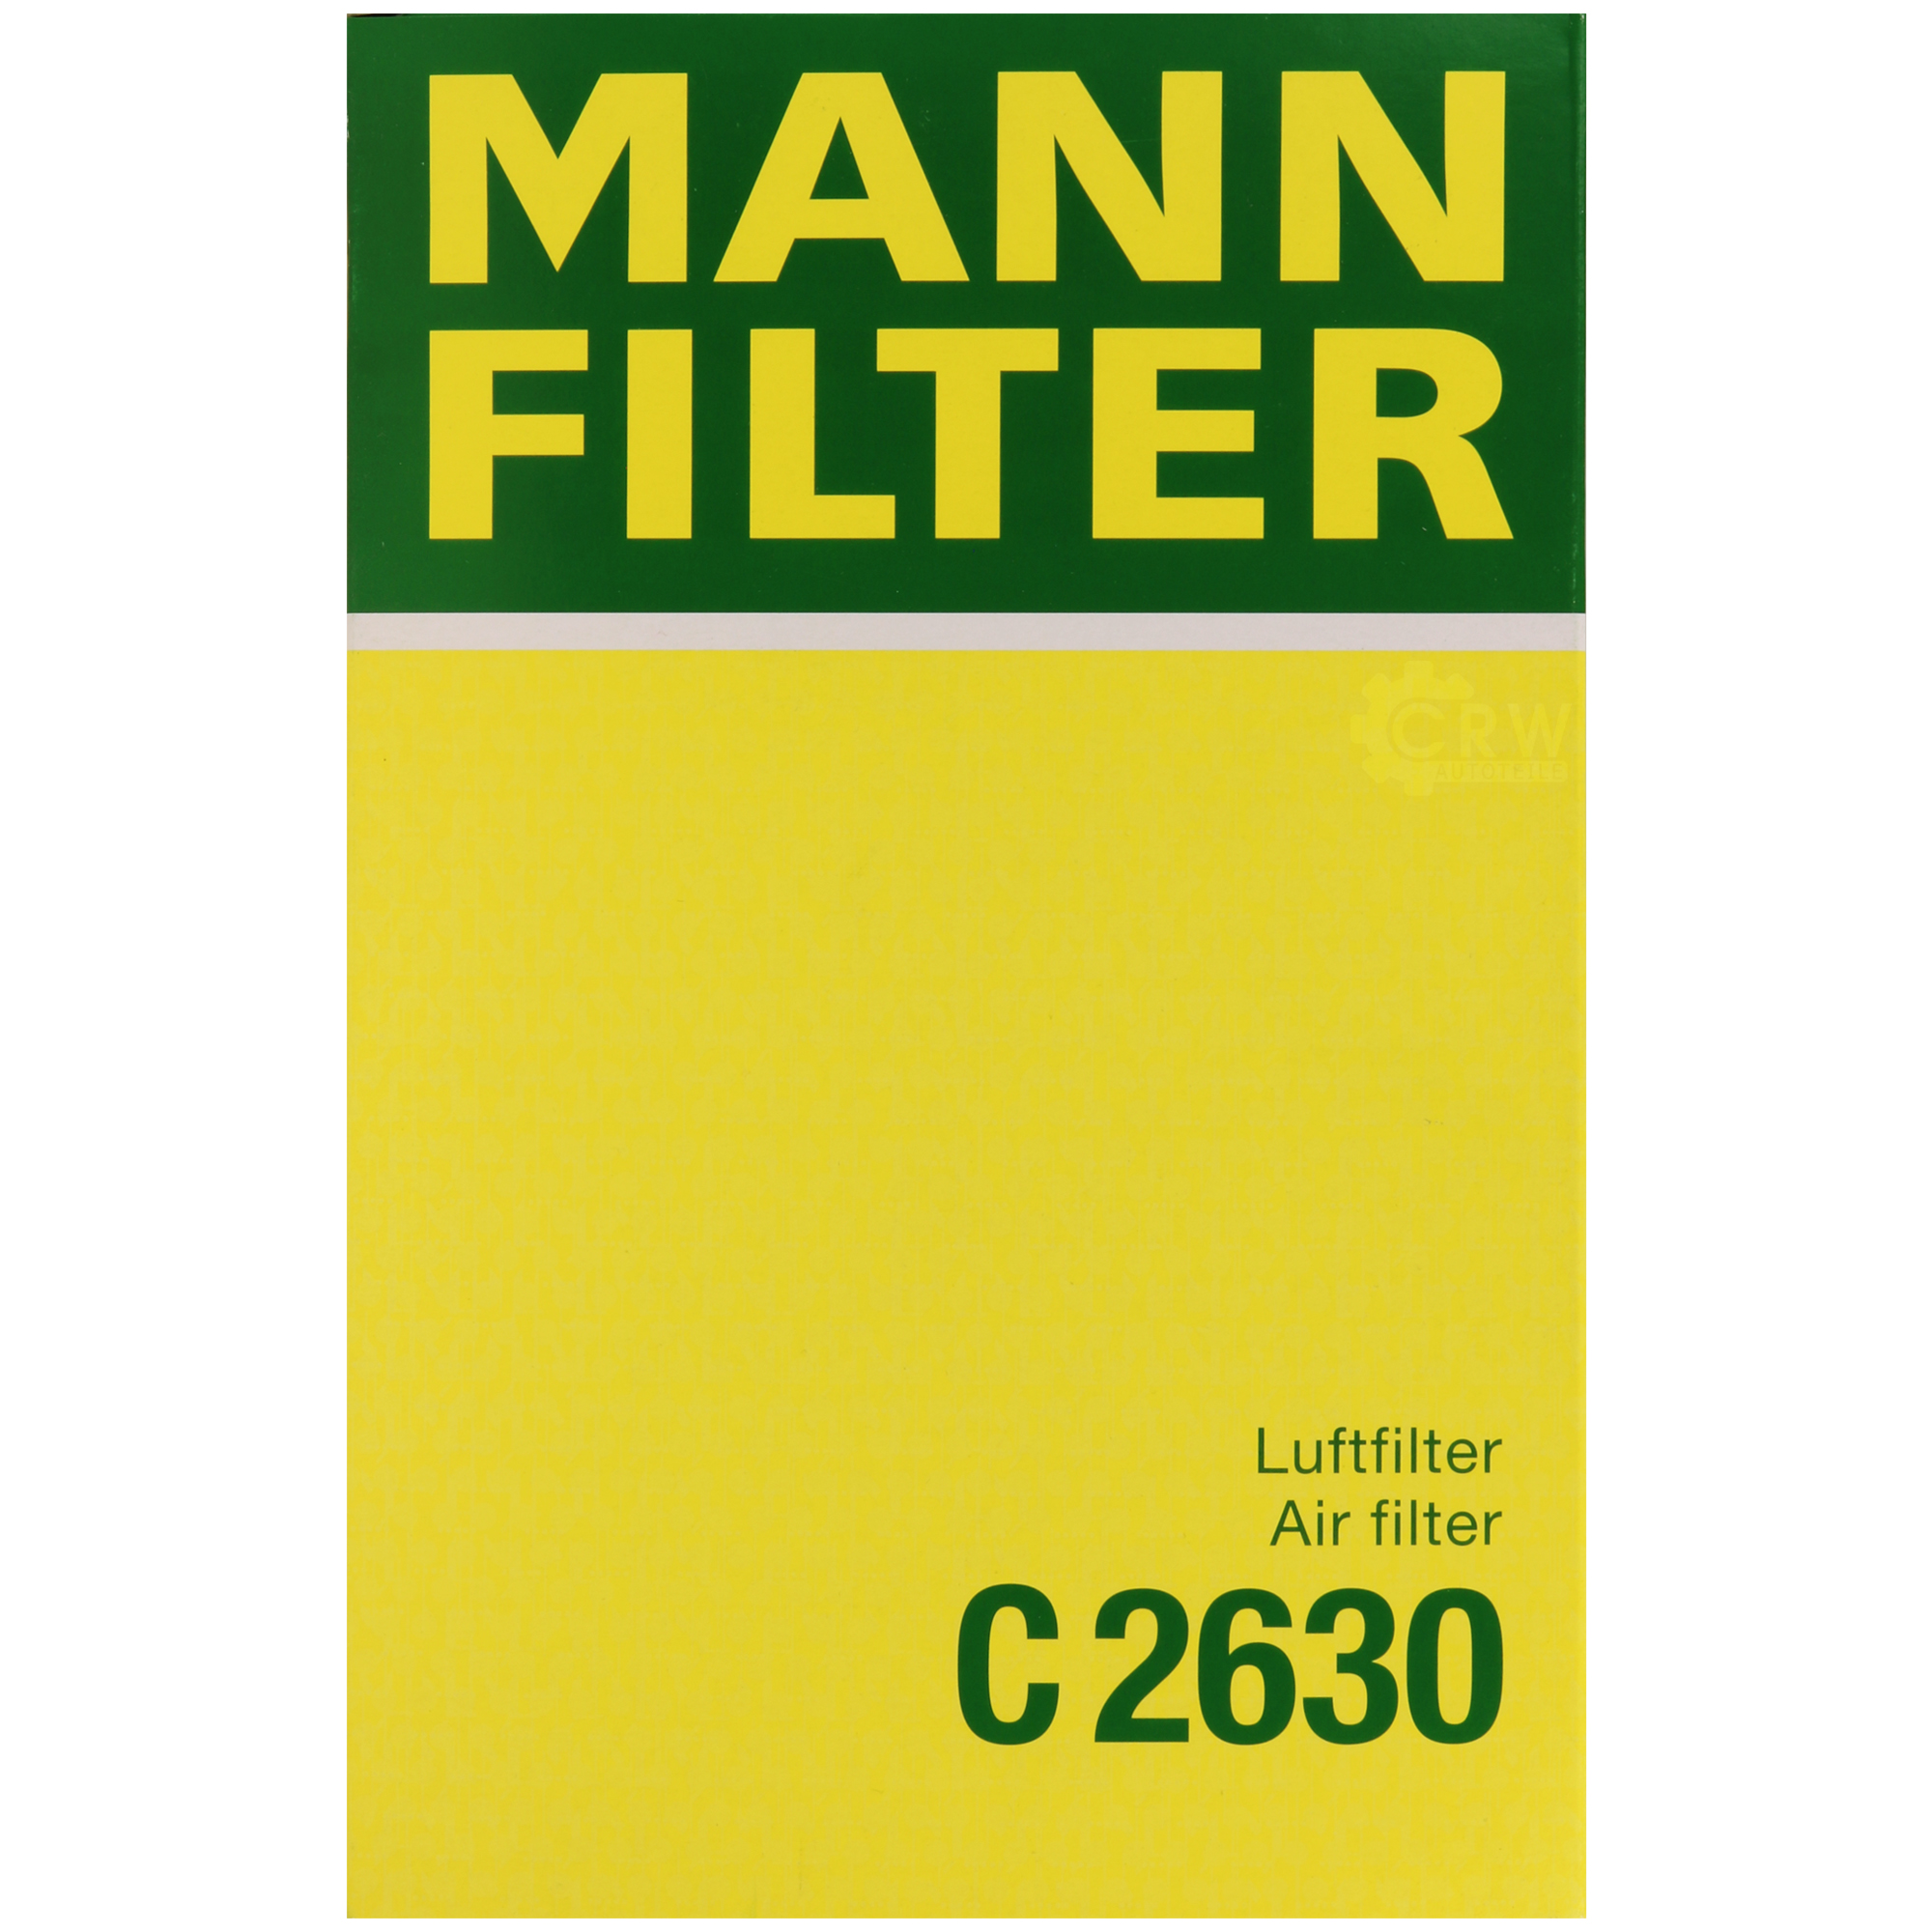 MANN-FILTER Luftfilter für Daewoo Rezzo U100 2.0 1.6 KLAU 1.8 Chevrolet